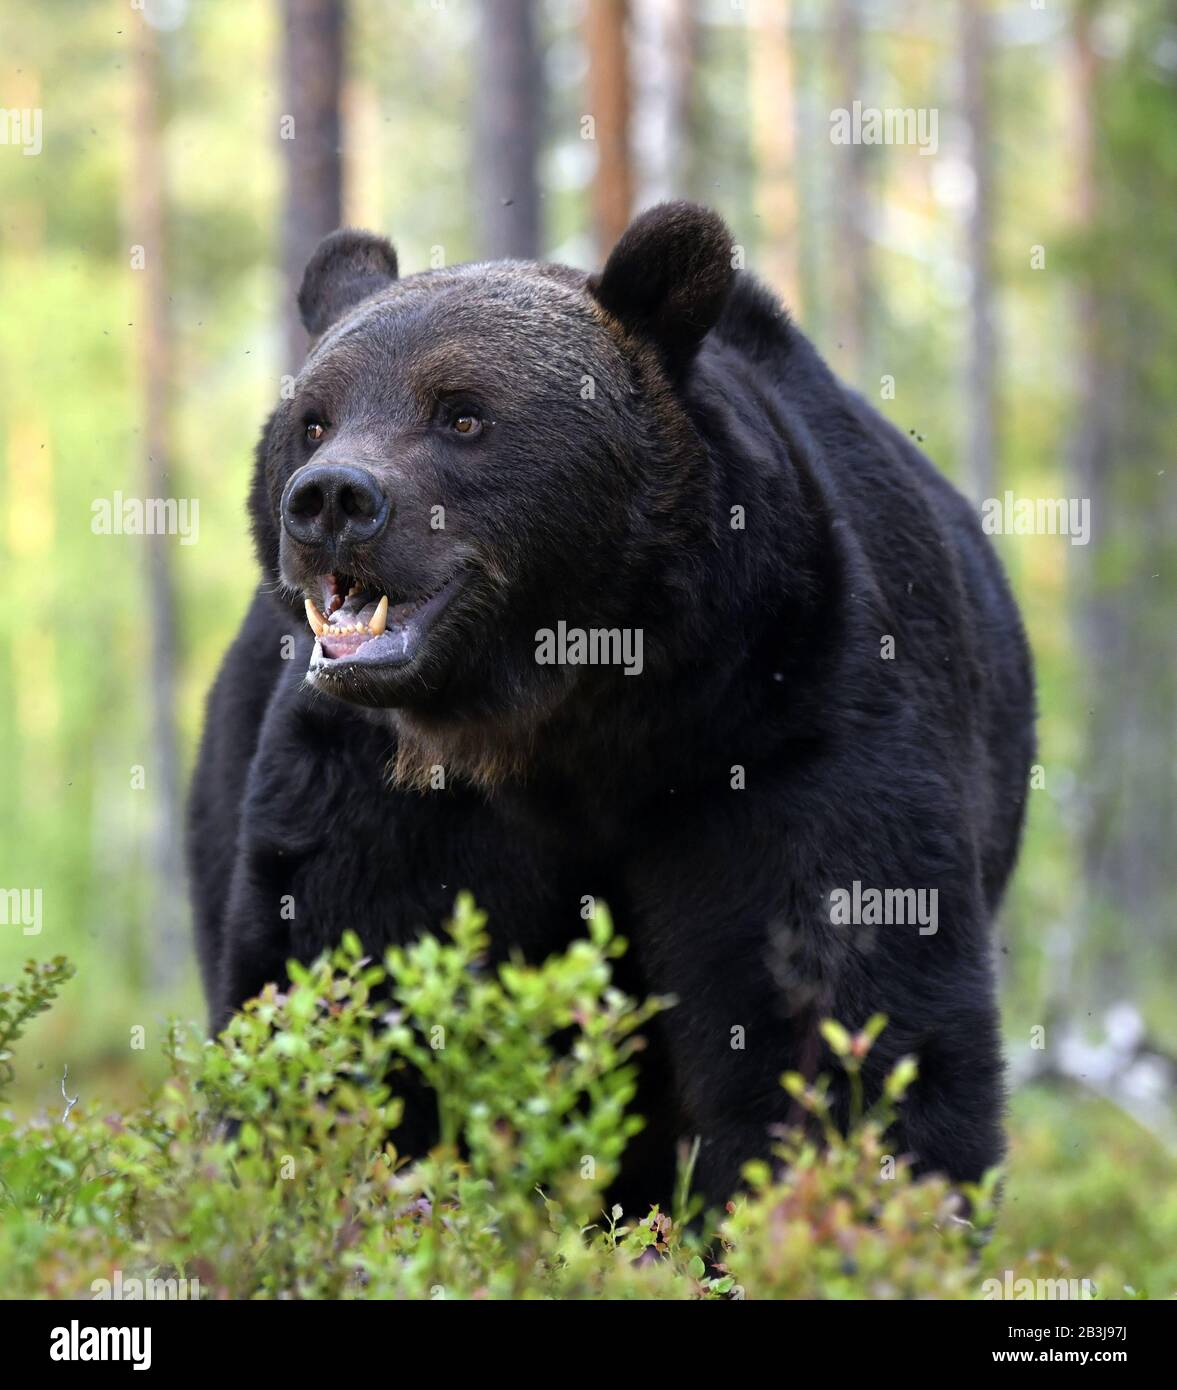 Gros portrait de l'ours brun à bouche ouverte dans la forêt d'été. Vue de face. Forêt verte fond naturel. Nom scientifique: Ursus arctos. Ntu Banque D'Images